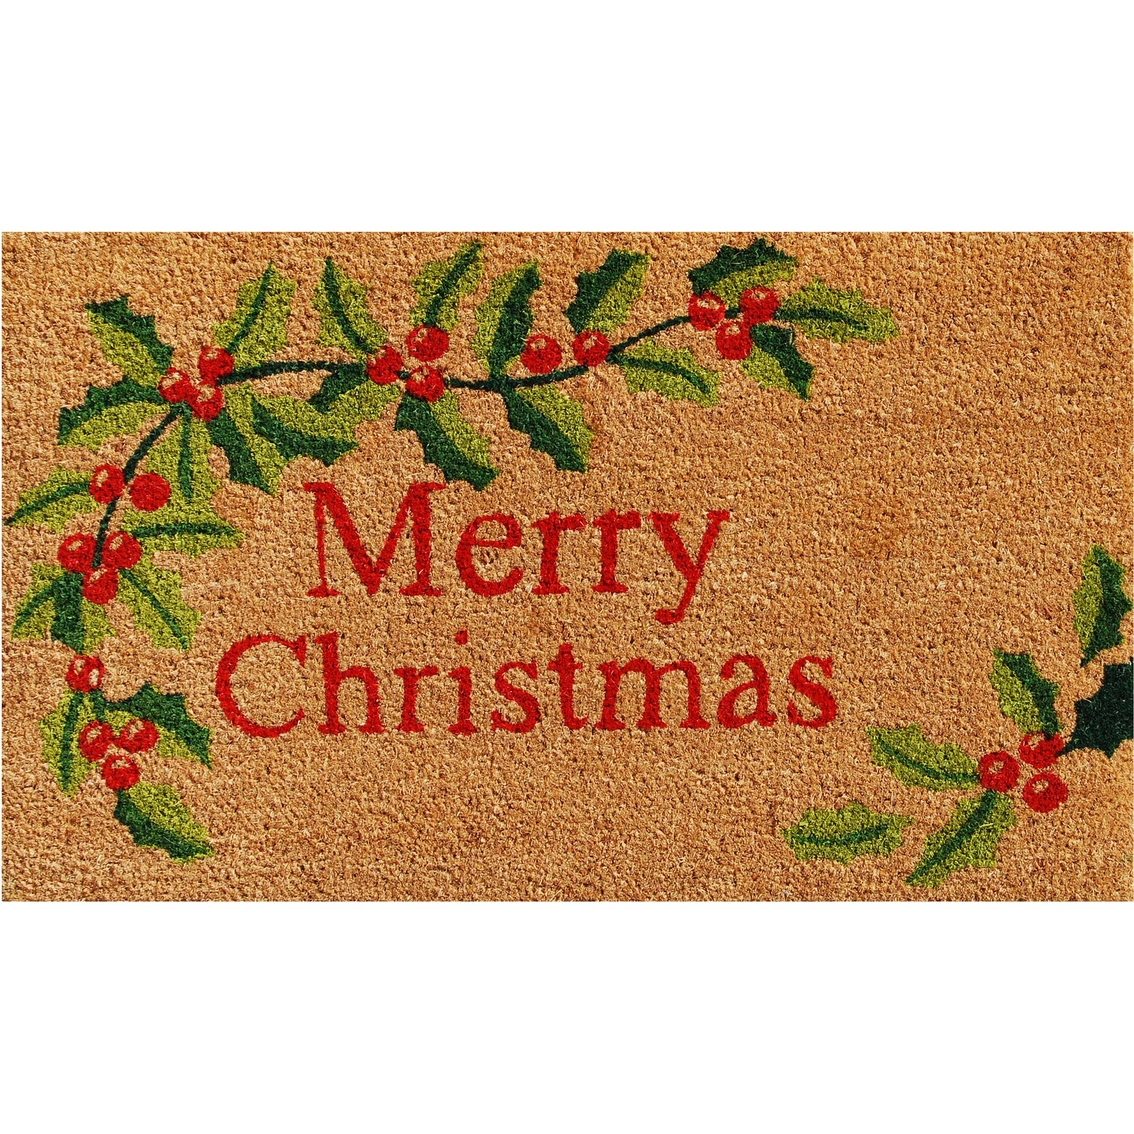 Callowaymills Merry Christmas Doormat